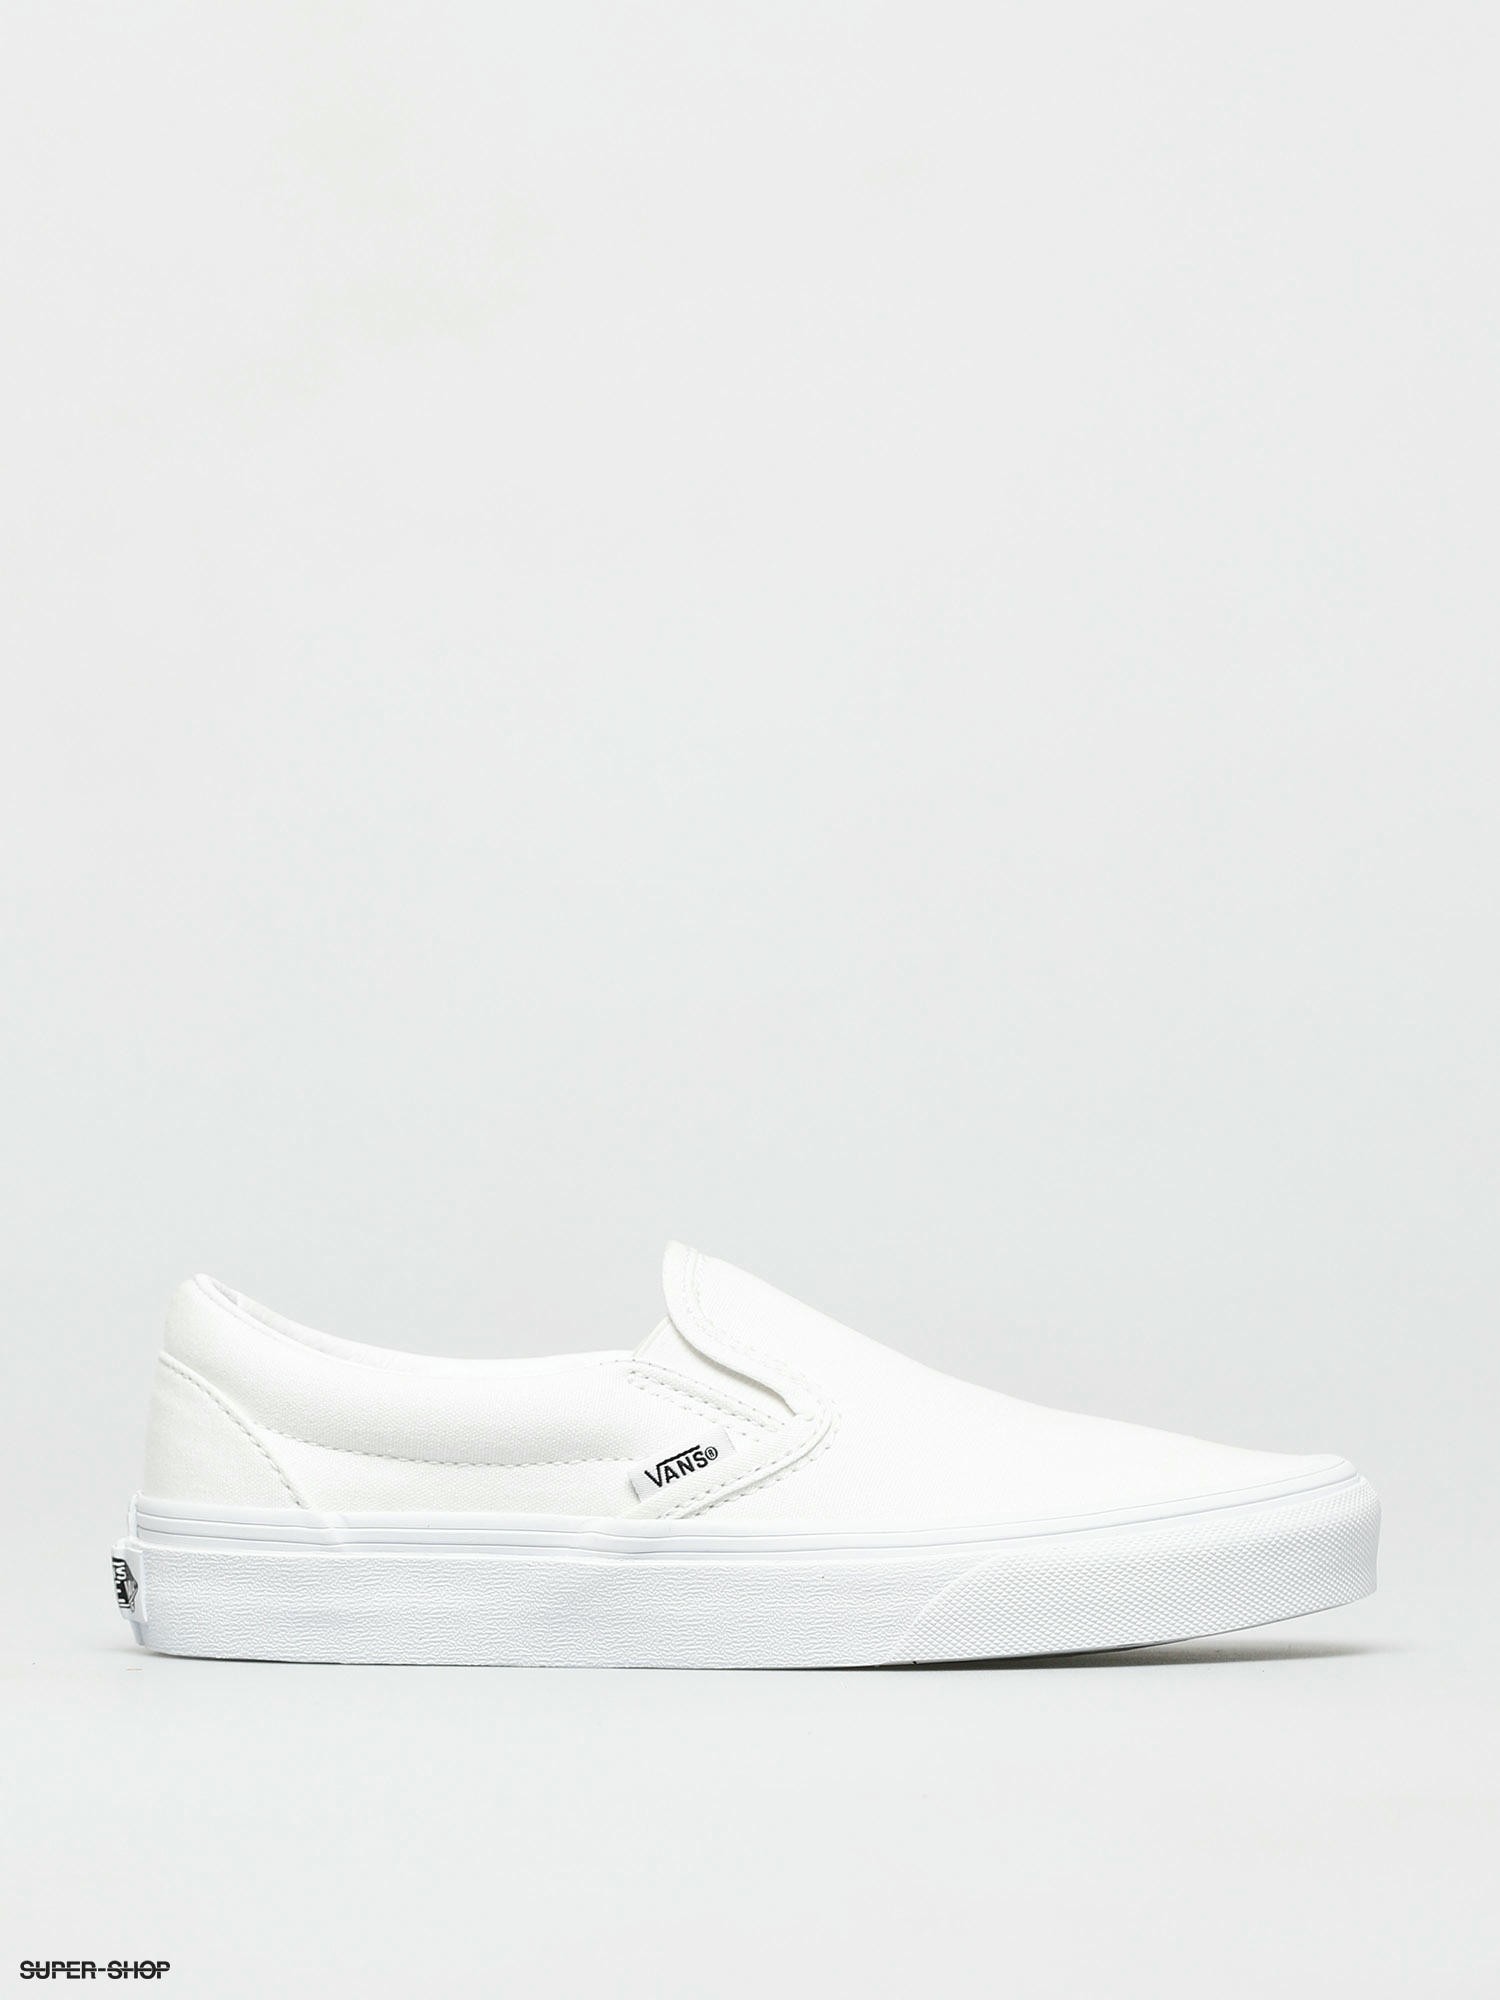 Sovesal Outlook Generel Vans Shoes Classic Slip On (true white)